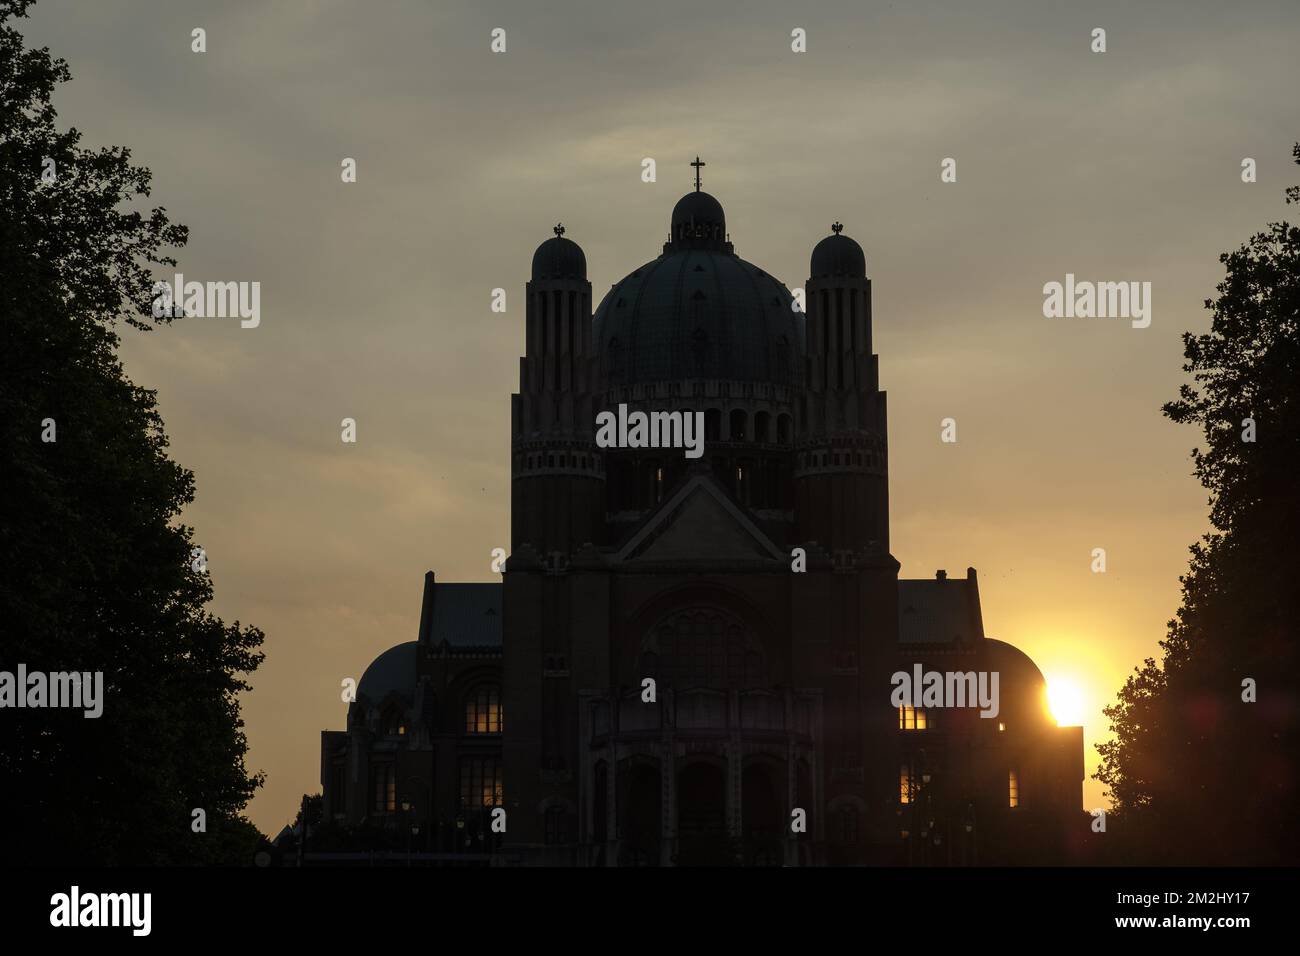 Sunset on the basilica of Koekelberg | Soleil couhant sur la Basilique du sacre-coeur de Bruxelles ou basilique de Koekelberg 05/08/2018 Stock Photo